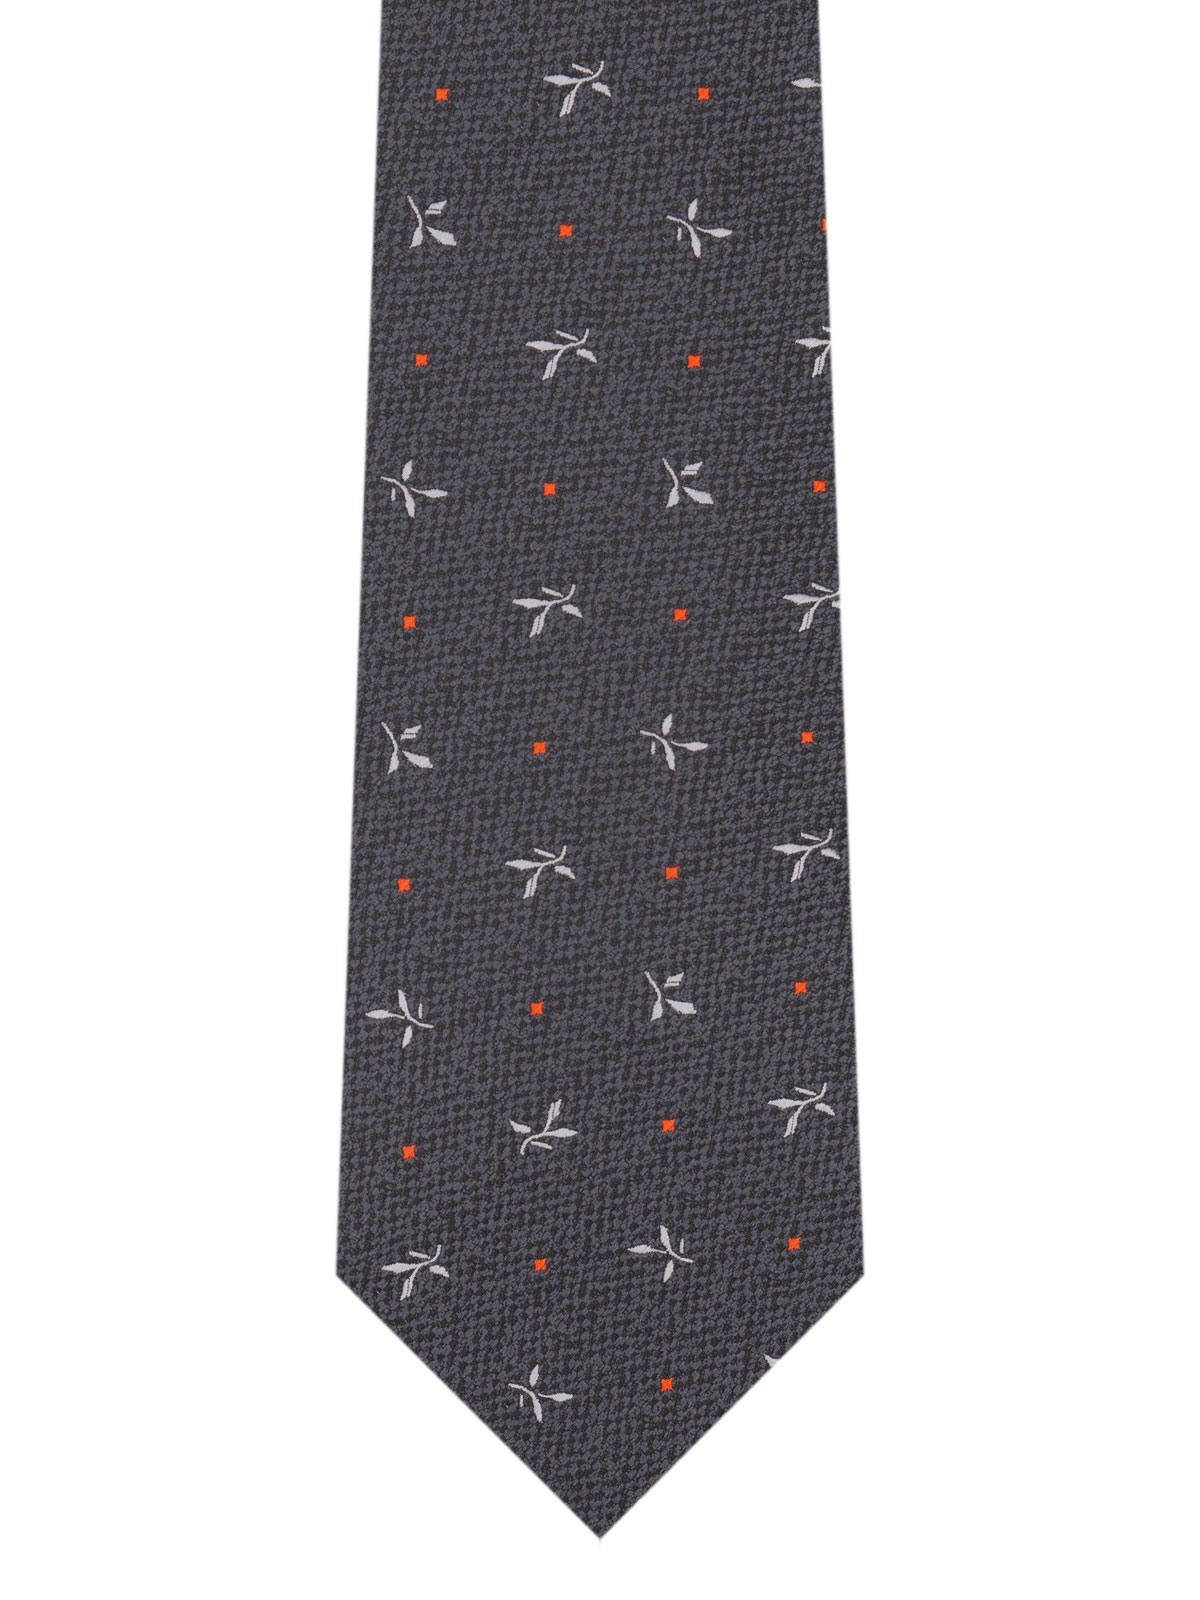 Cravată în gri închis cu forme și puncte - 10185 - € 14.06 img2